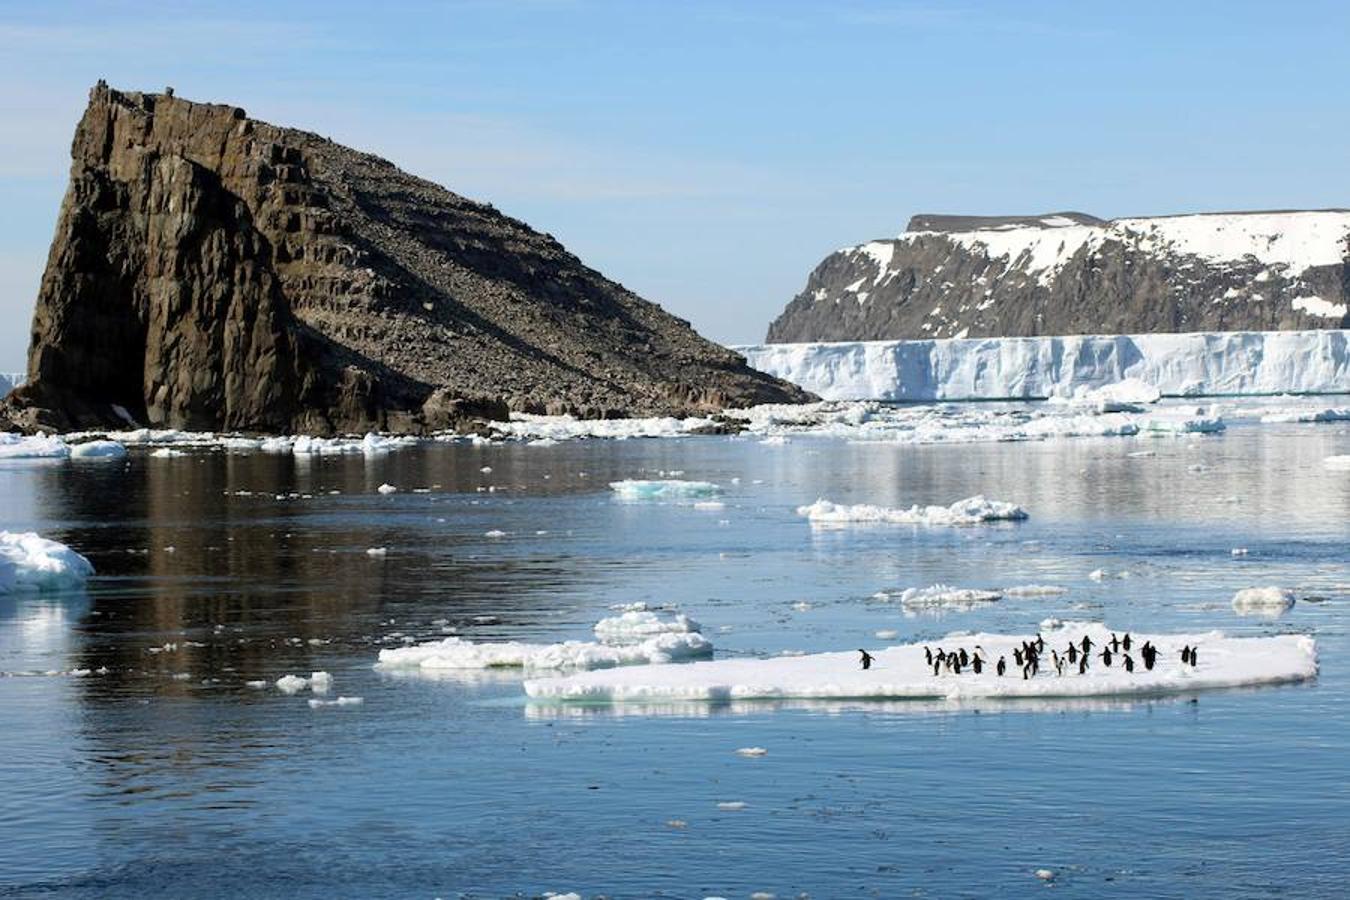 Se han descubierto alrededor de 1,5 millones de pingüinos Adelie en las remotas Islas Danger en el este de la Antártida.